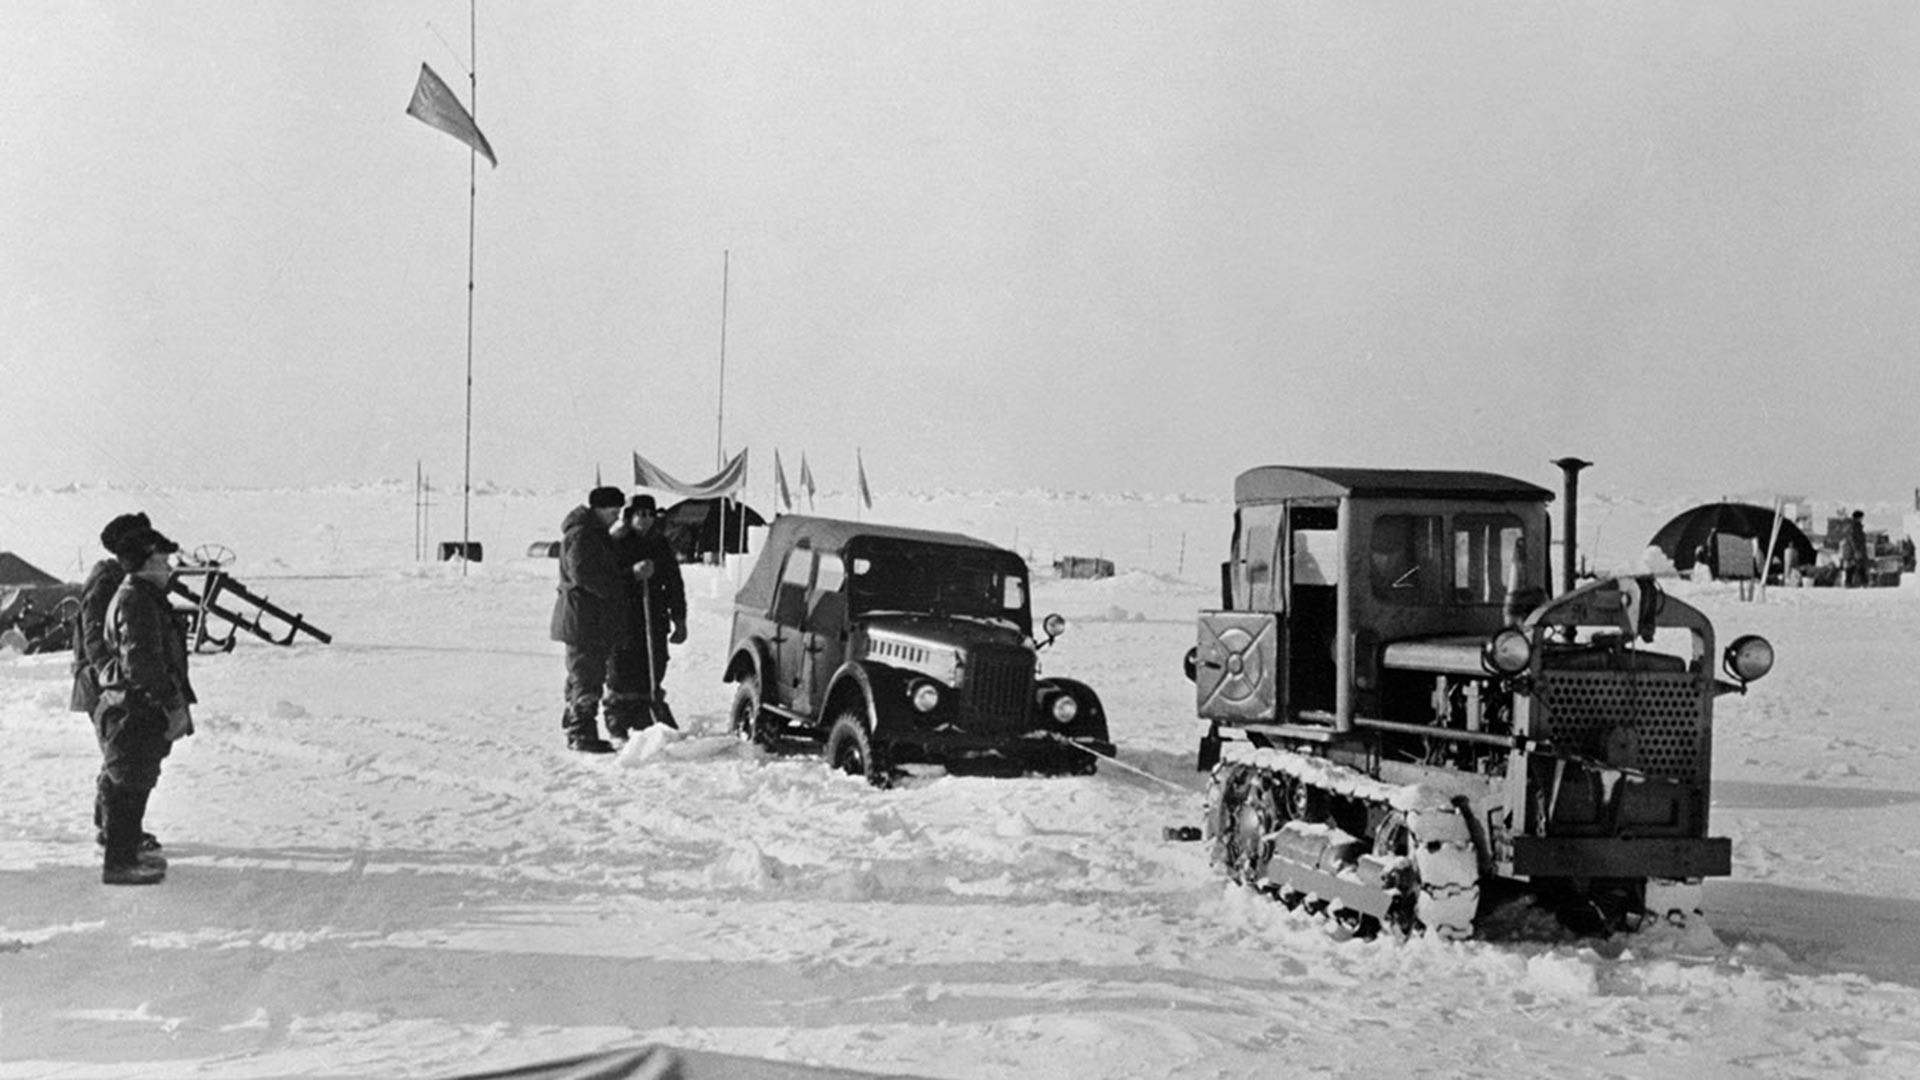 Un tracteur secourt une voiture en panne dans l'une des stations d'observation mises en place par les scientifiques de l'Union soviétique au sommet d'une banquise dans la région arctique.